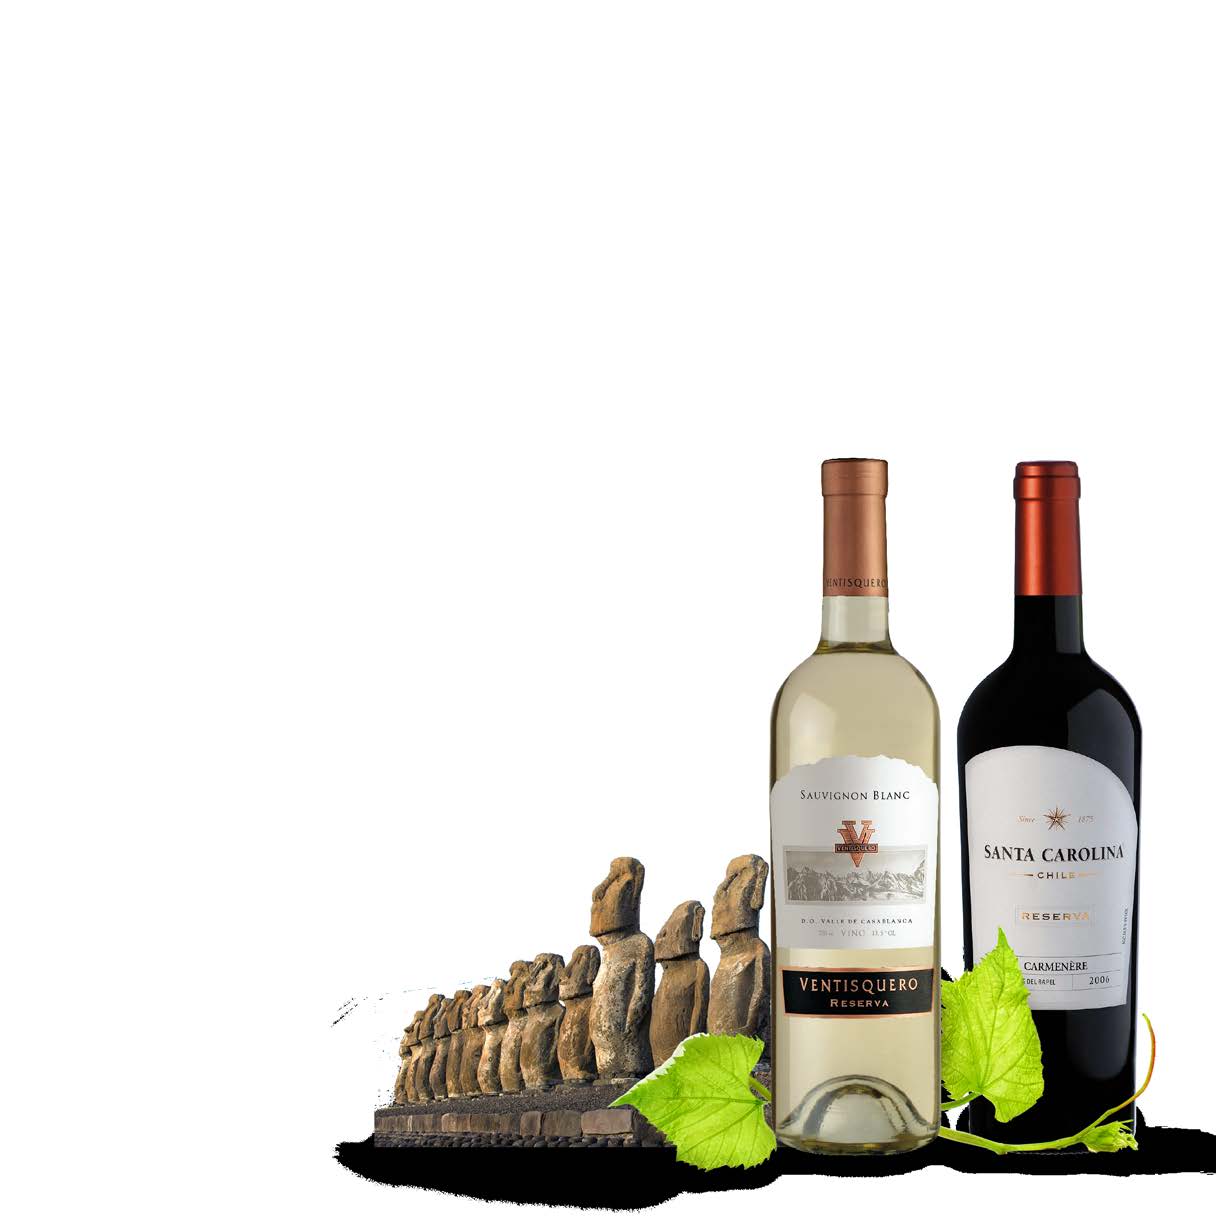 GAZETKA PROMOCYJNA CENTRUM WINA 6 w dniach 2-8 października WSZYSTKIE WINA Z CHILE -25 % Chile to jeden z najstarszych krajów winiarskich Ameryki.